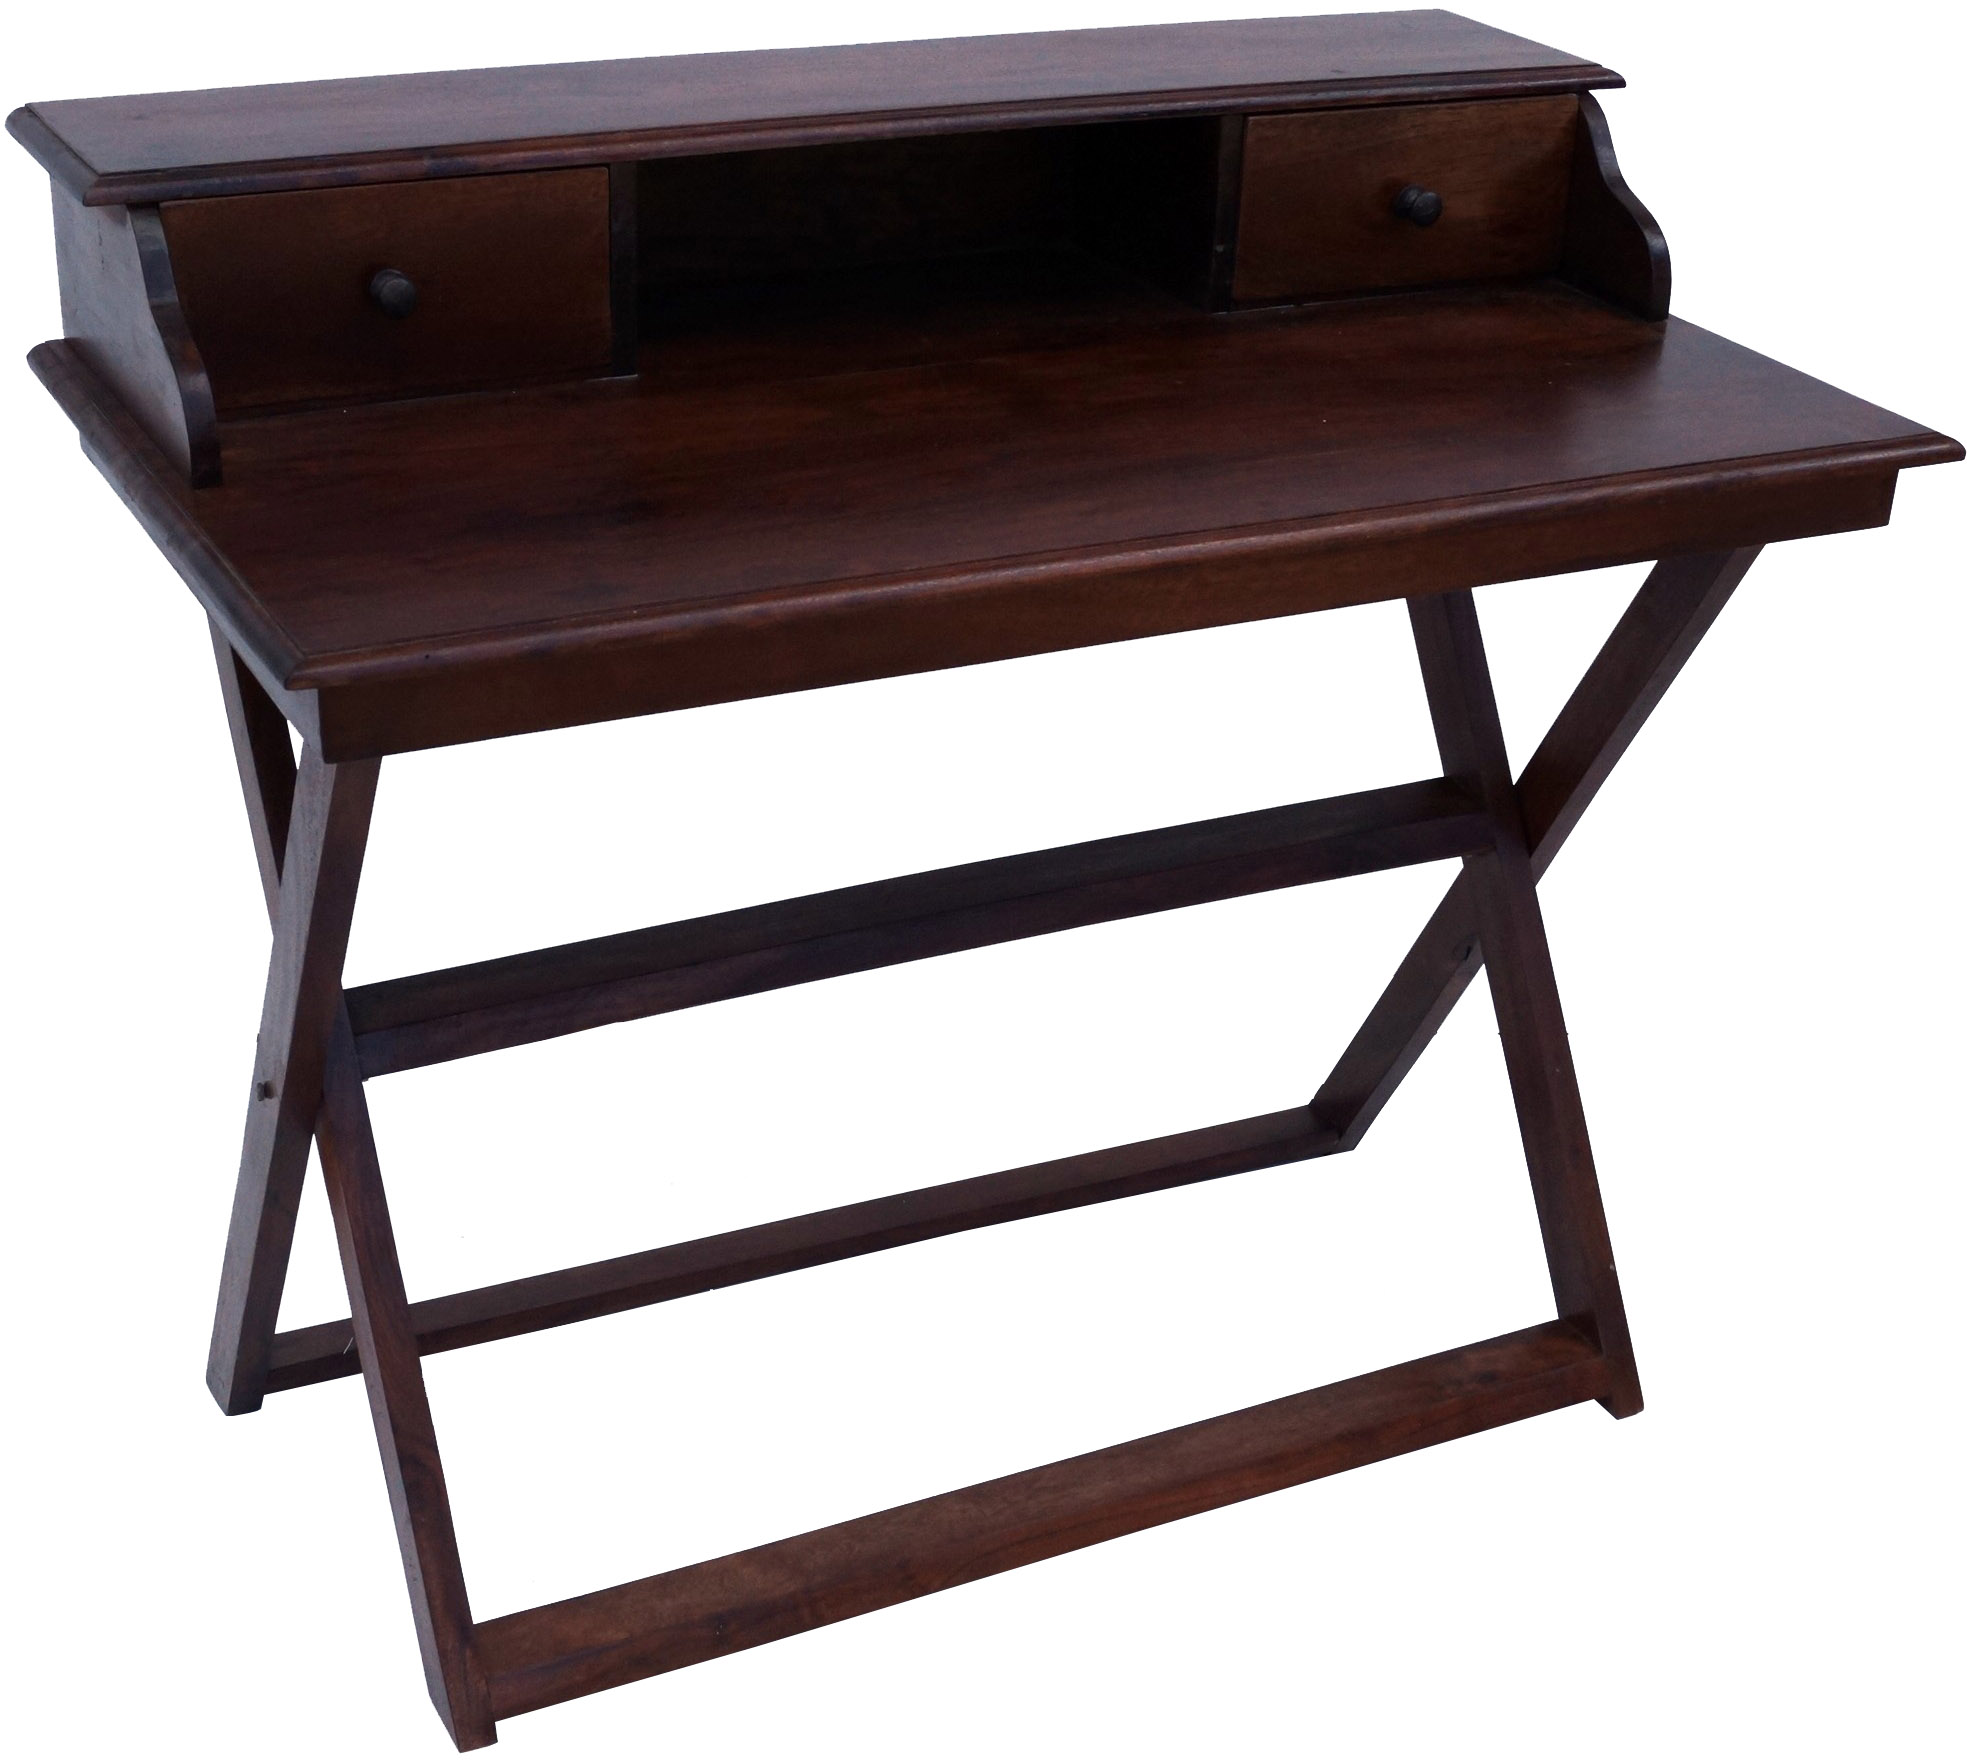 Schreibtisch mit klappbarem Ständer , 2 Schubfächern - Modell 10